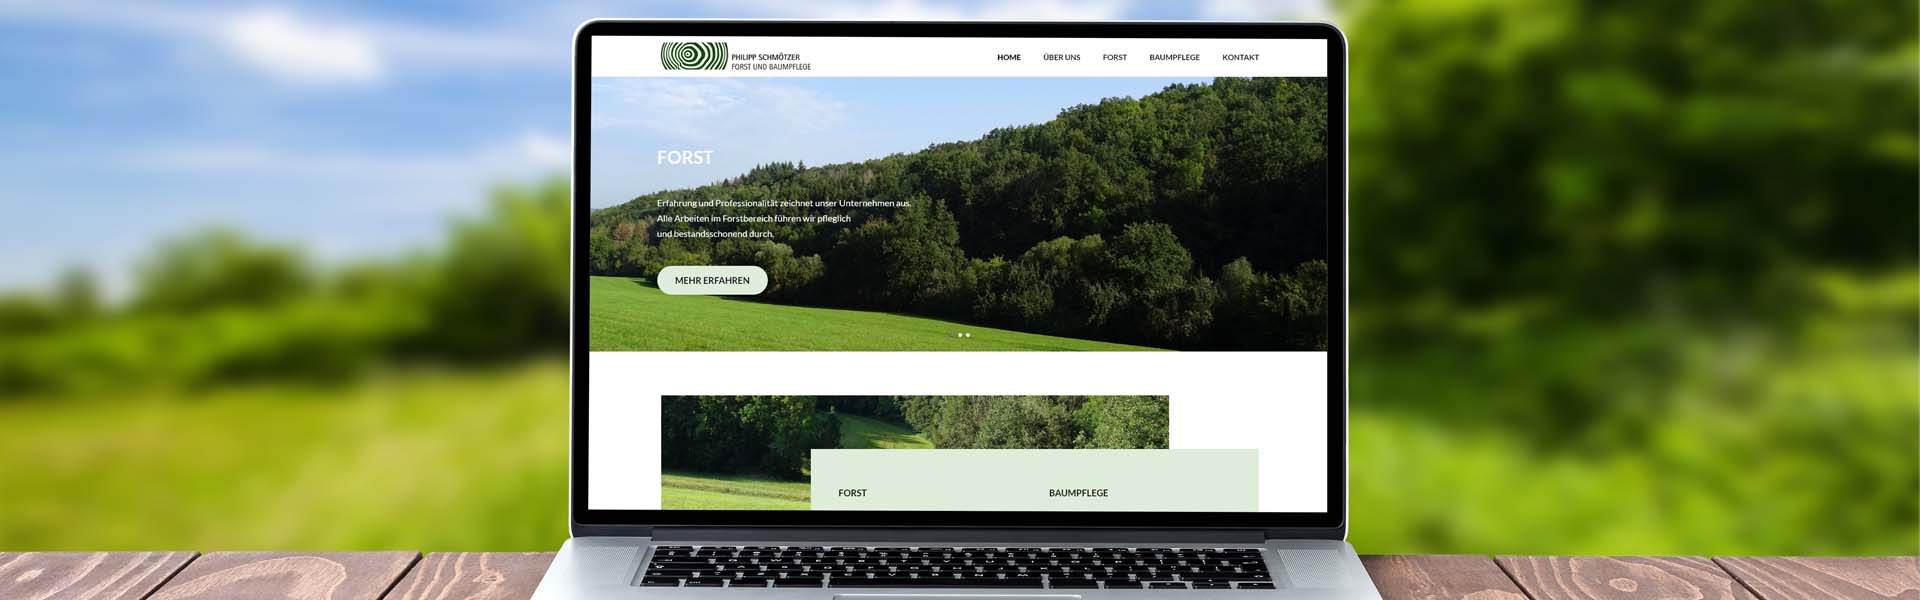 Homepage für Philipp Schmötzer Forst und Baumpflege